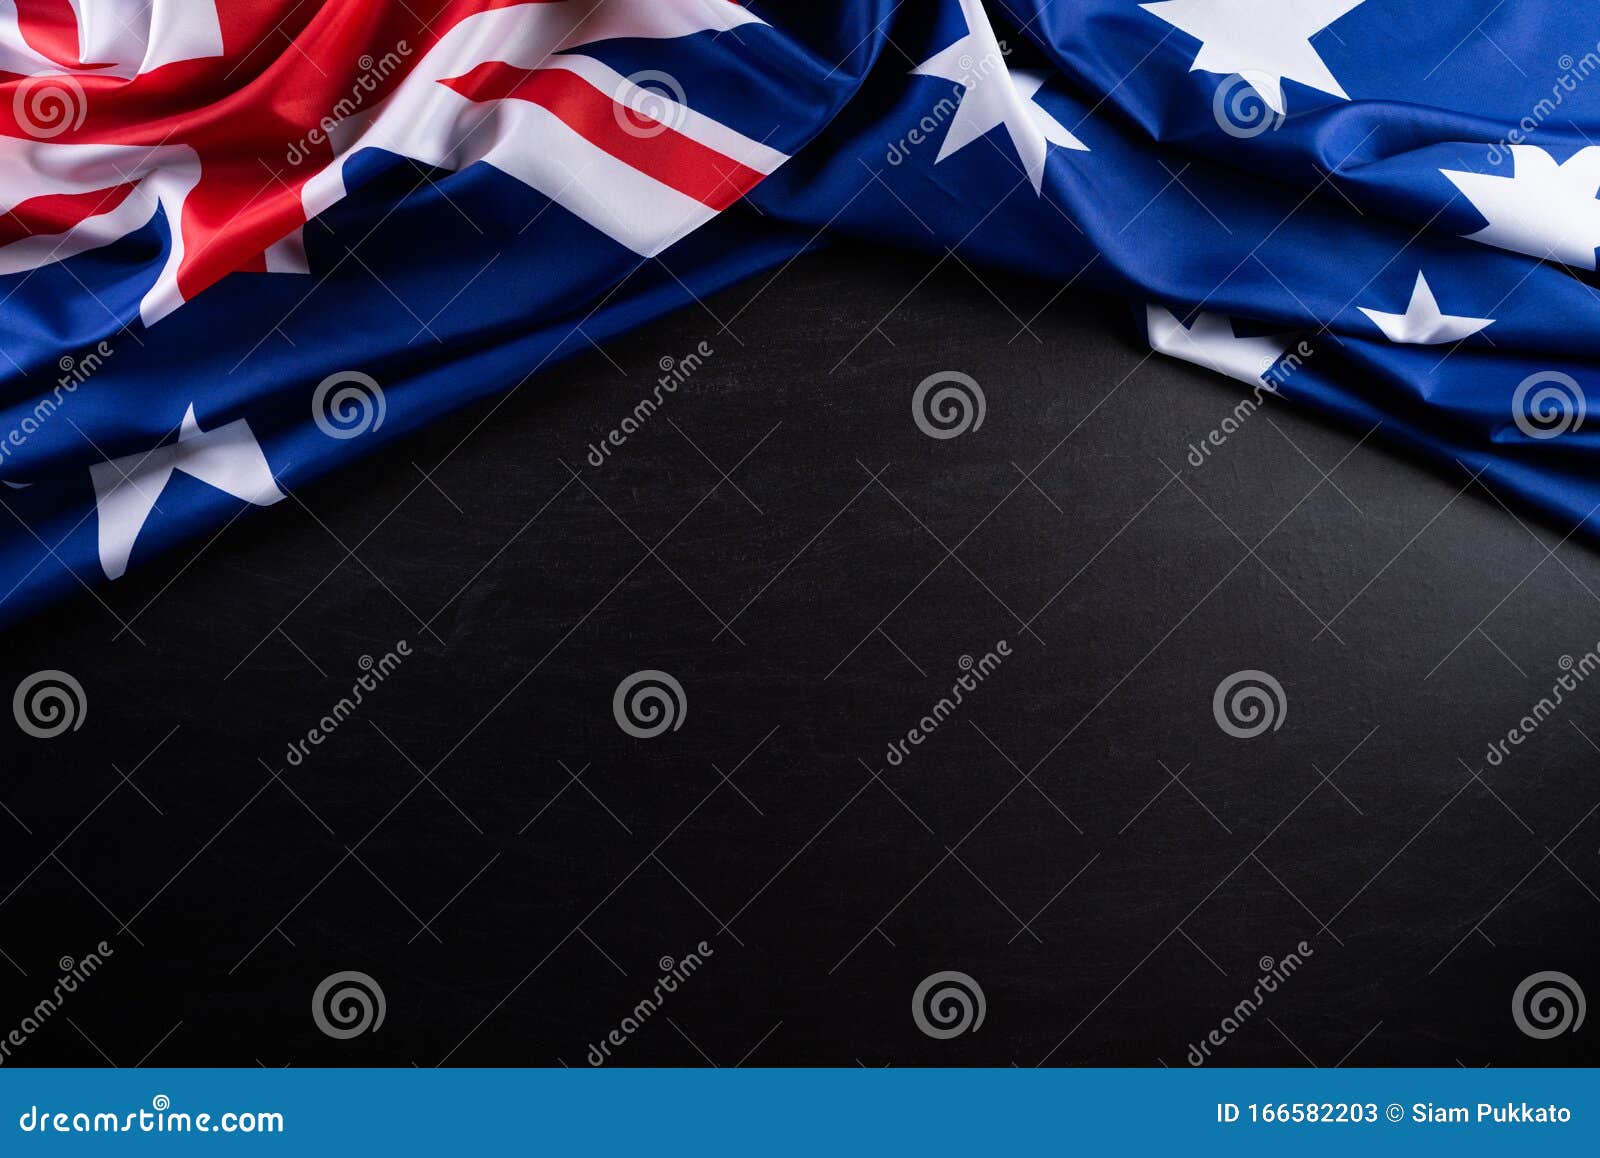 14,529 Australia Flag Photos - Free Royalty-Free Stock Photos Dreamstime